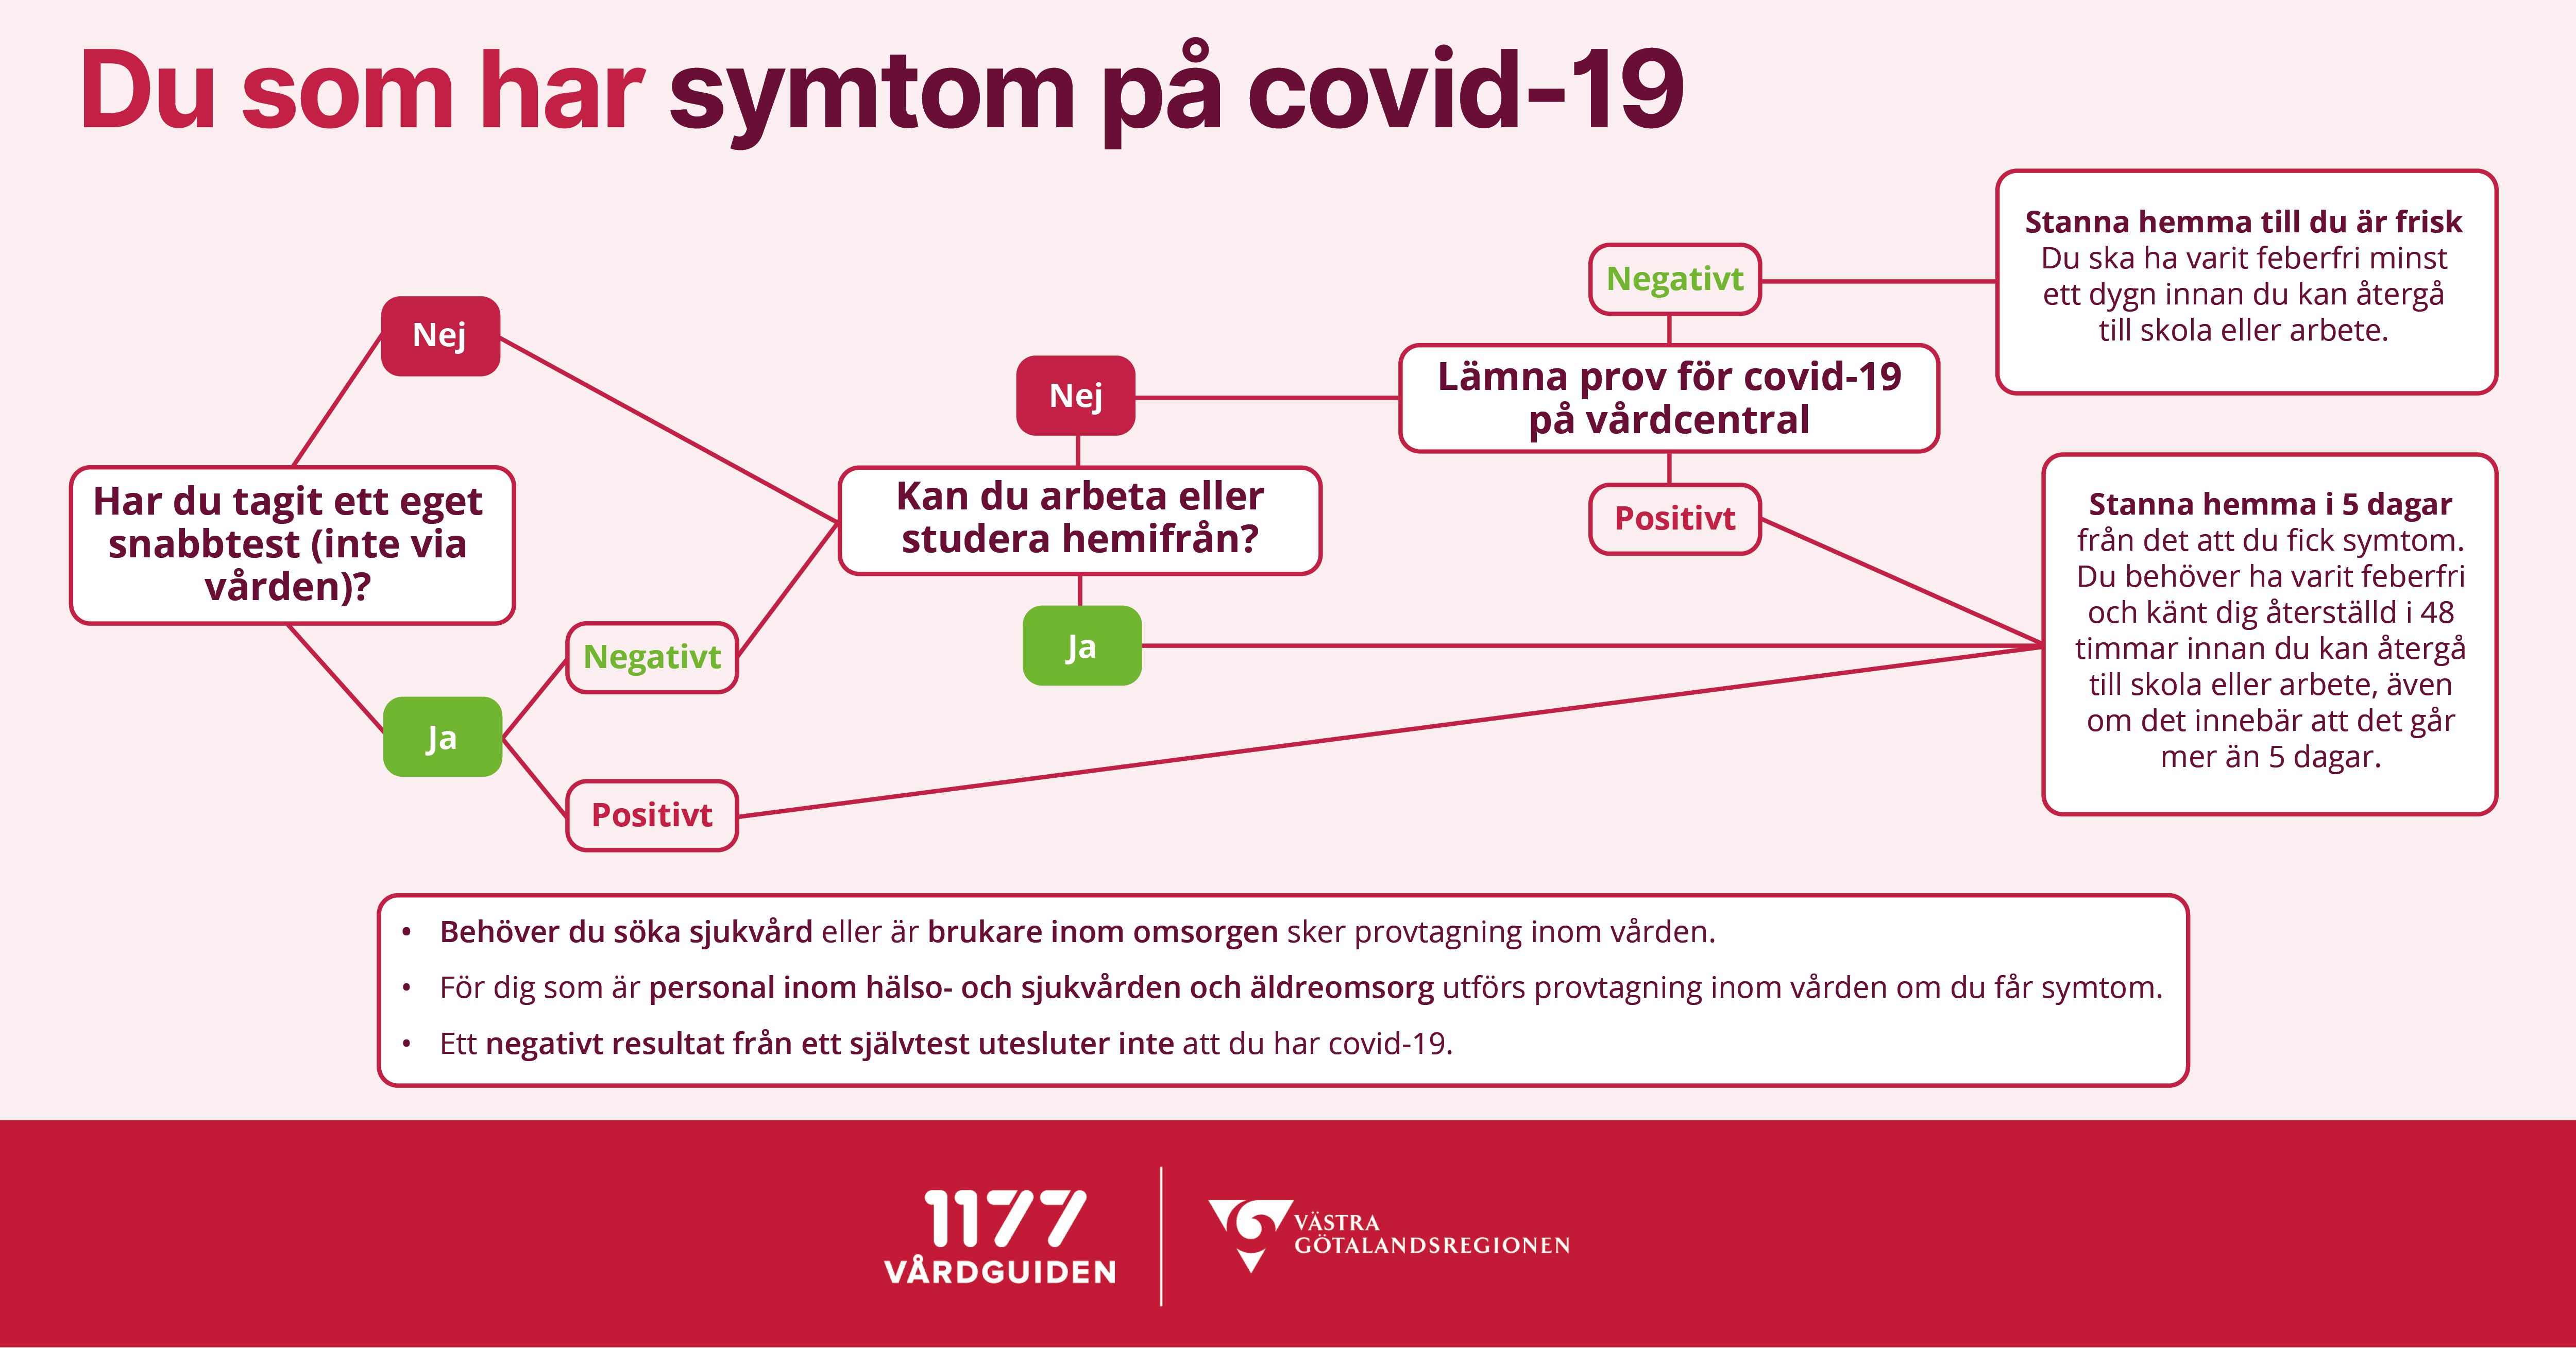 Bilden visualiserar hur du ska göra om du har symtom på covid-19, informationen finns också beskriven i text på sidan